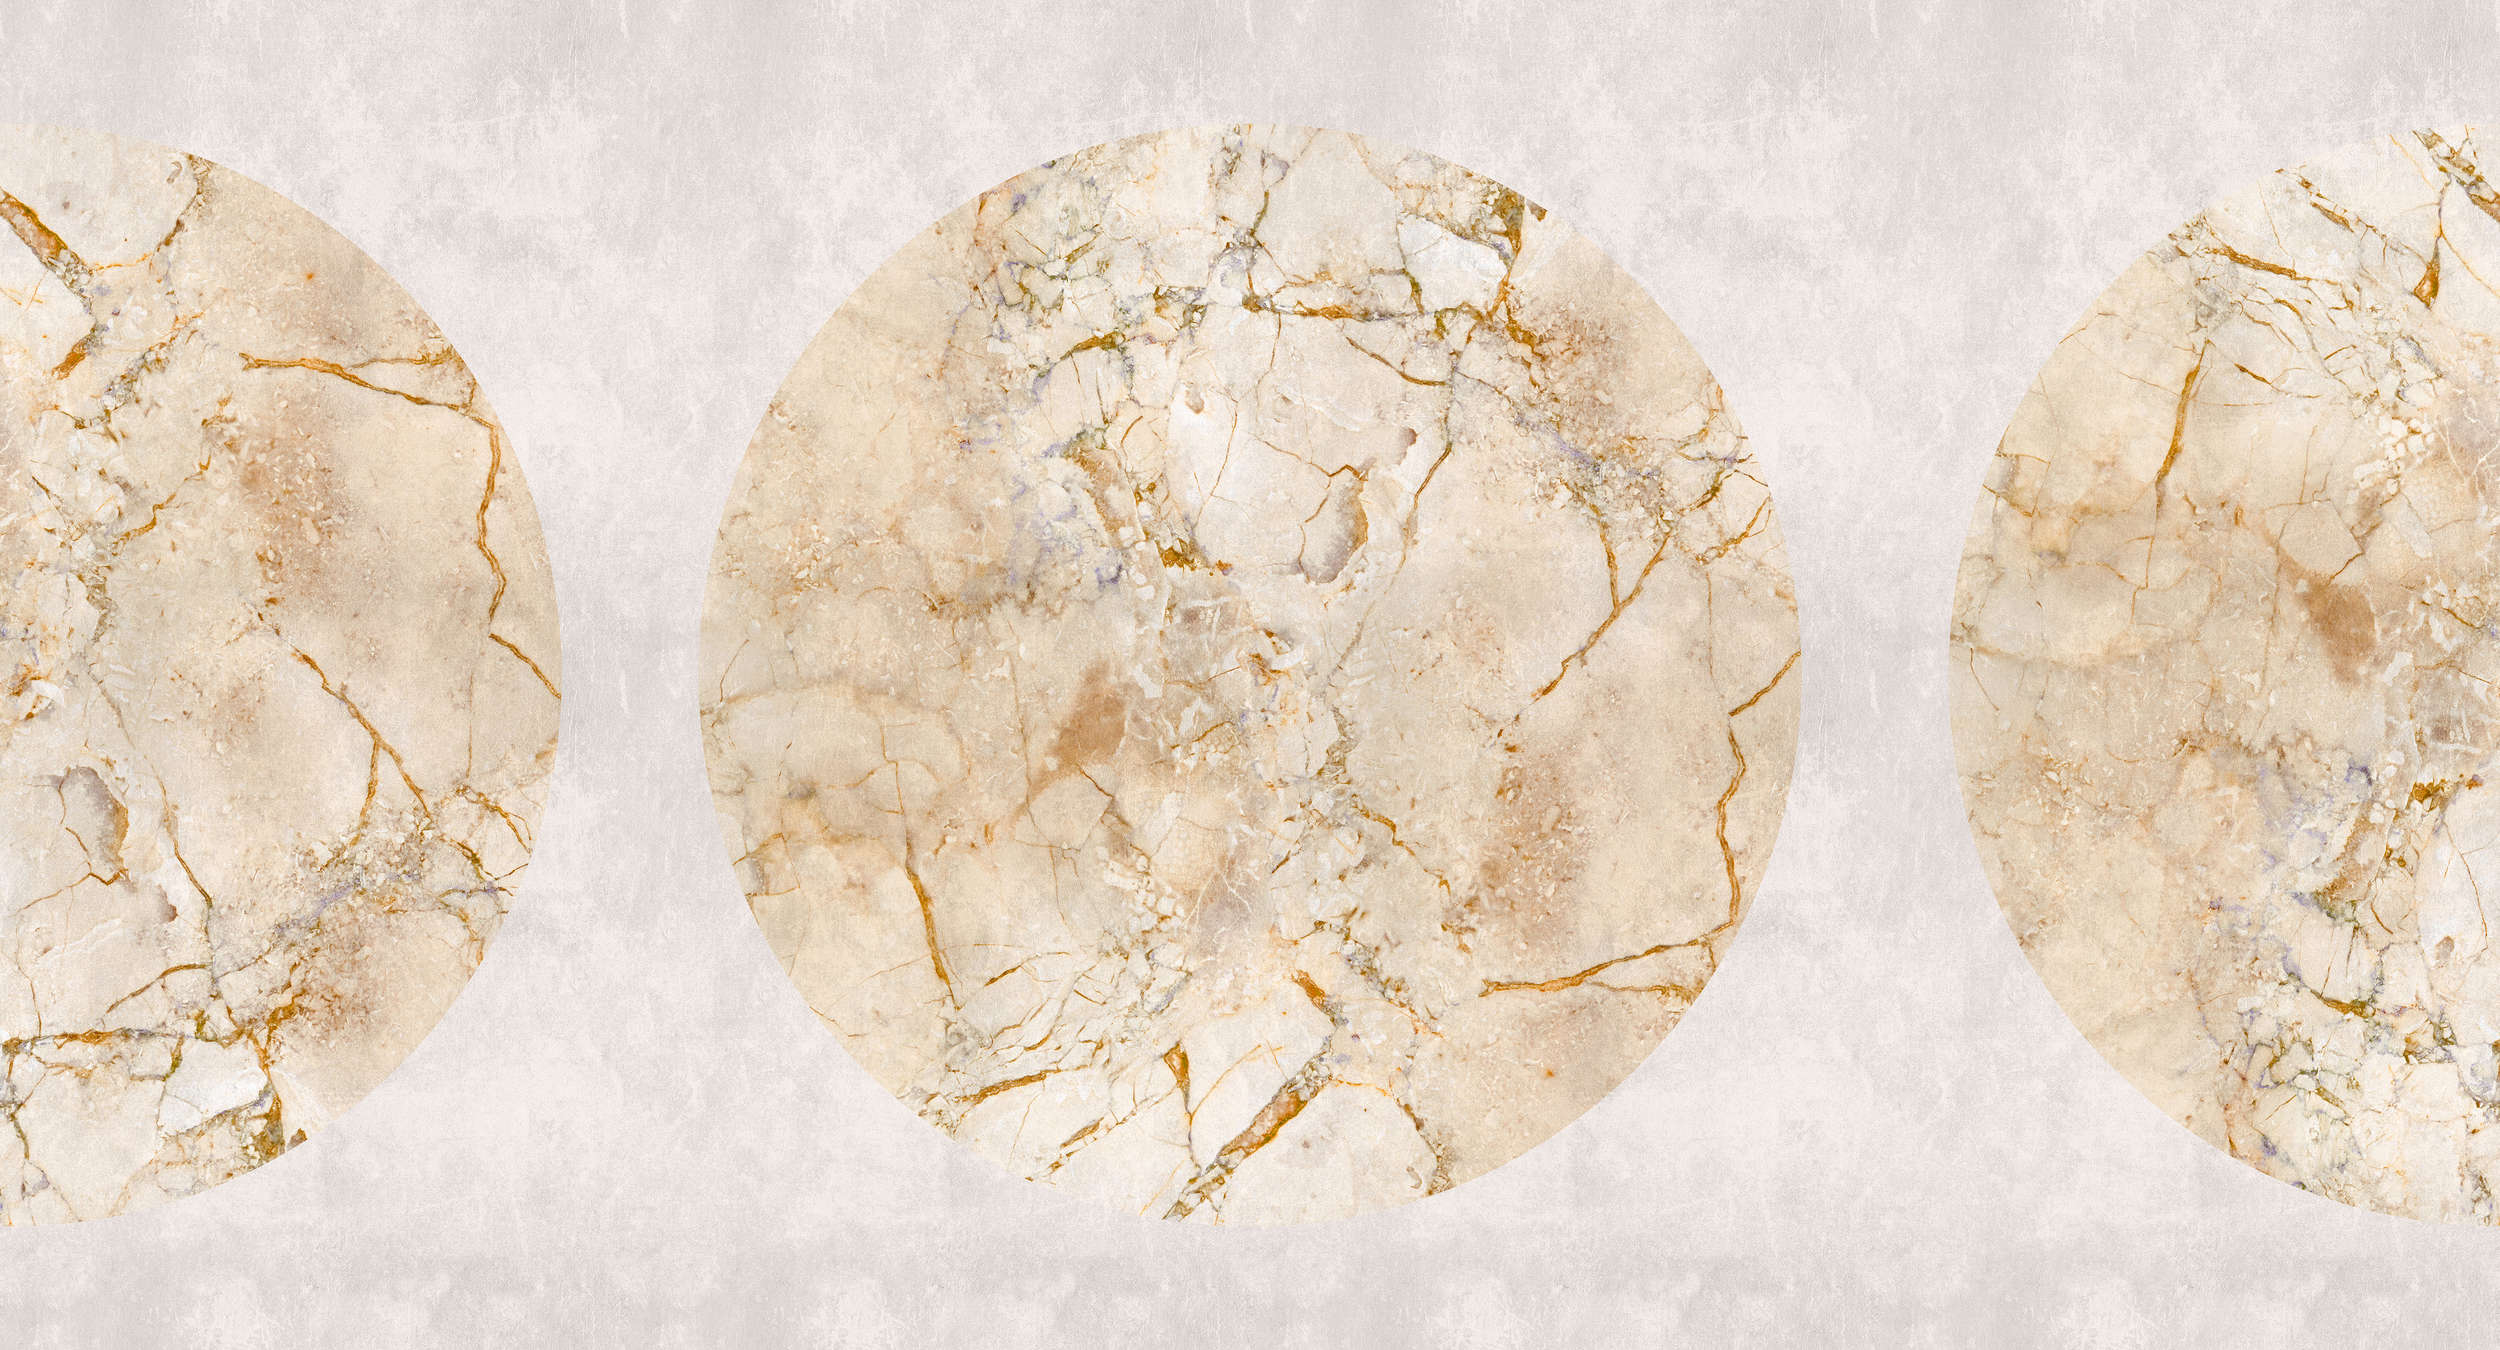             Venus 1 - Papel pintado de mármol dorado con motivo de círculos y aspecto de yeso
        